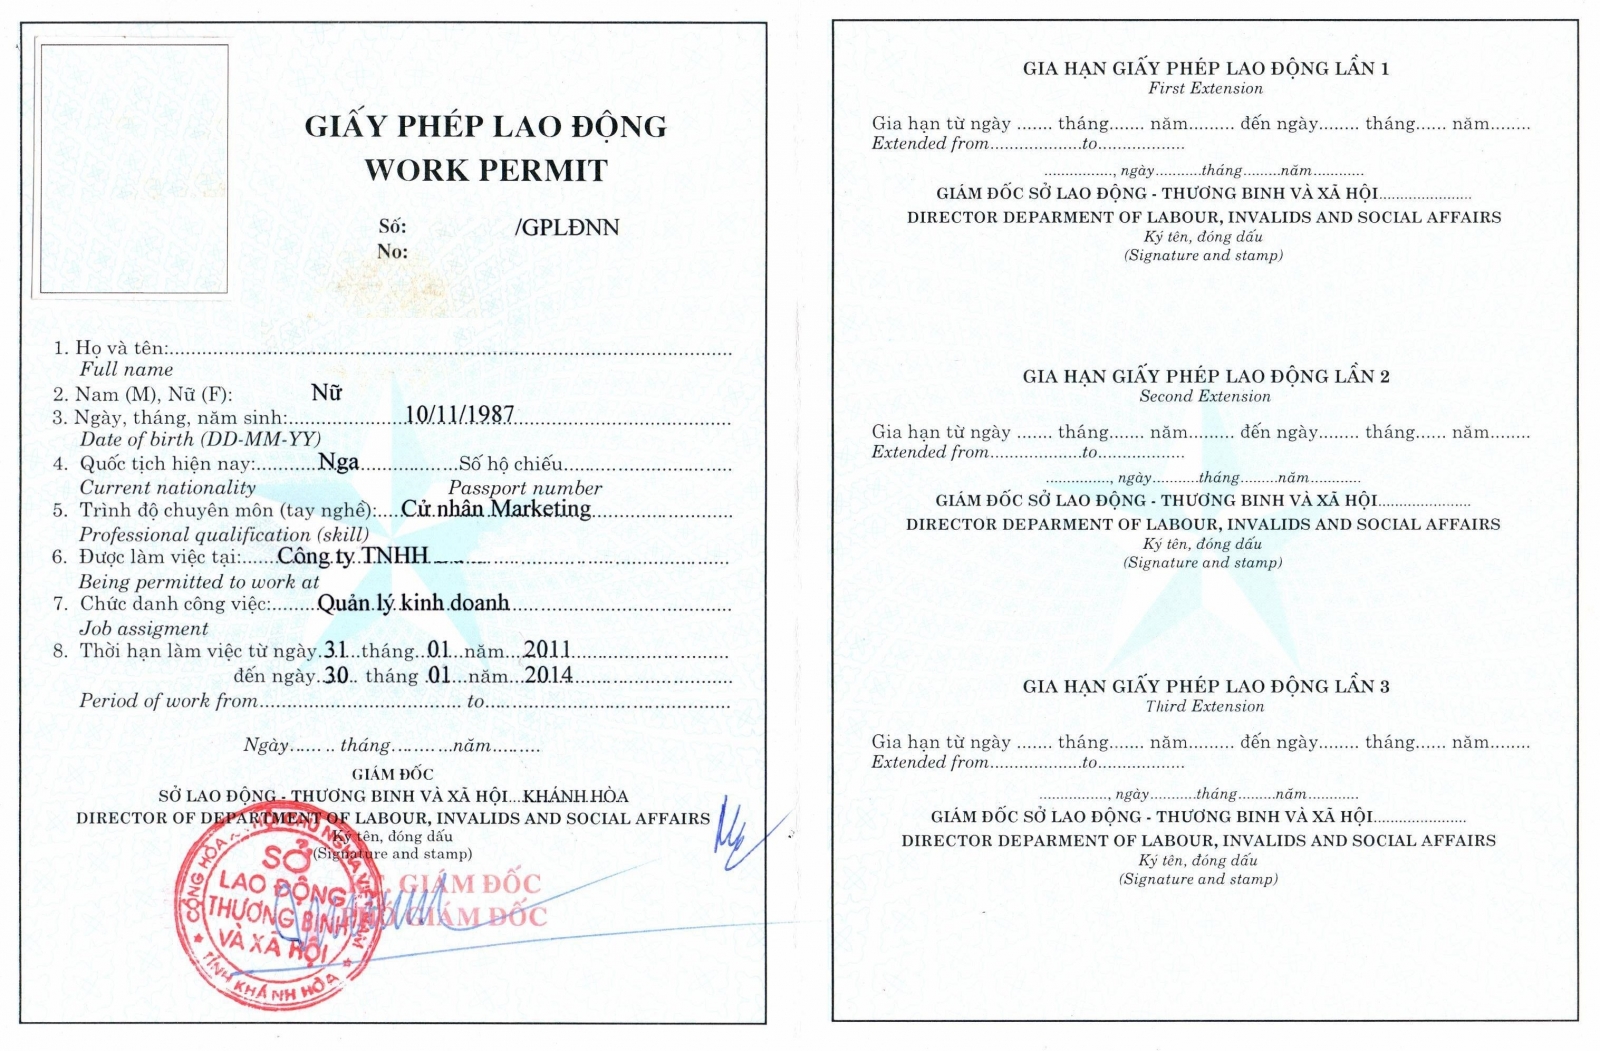 Giấy phép lao động dành dành cho người nước ngoài tại Việt Nam